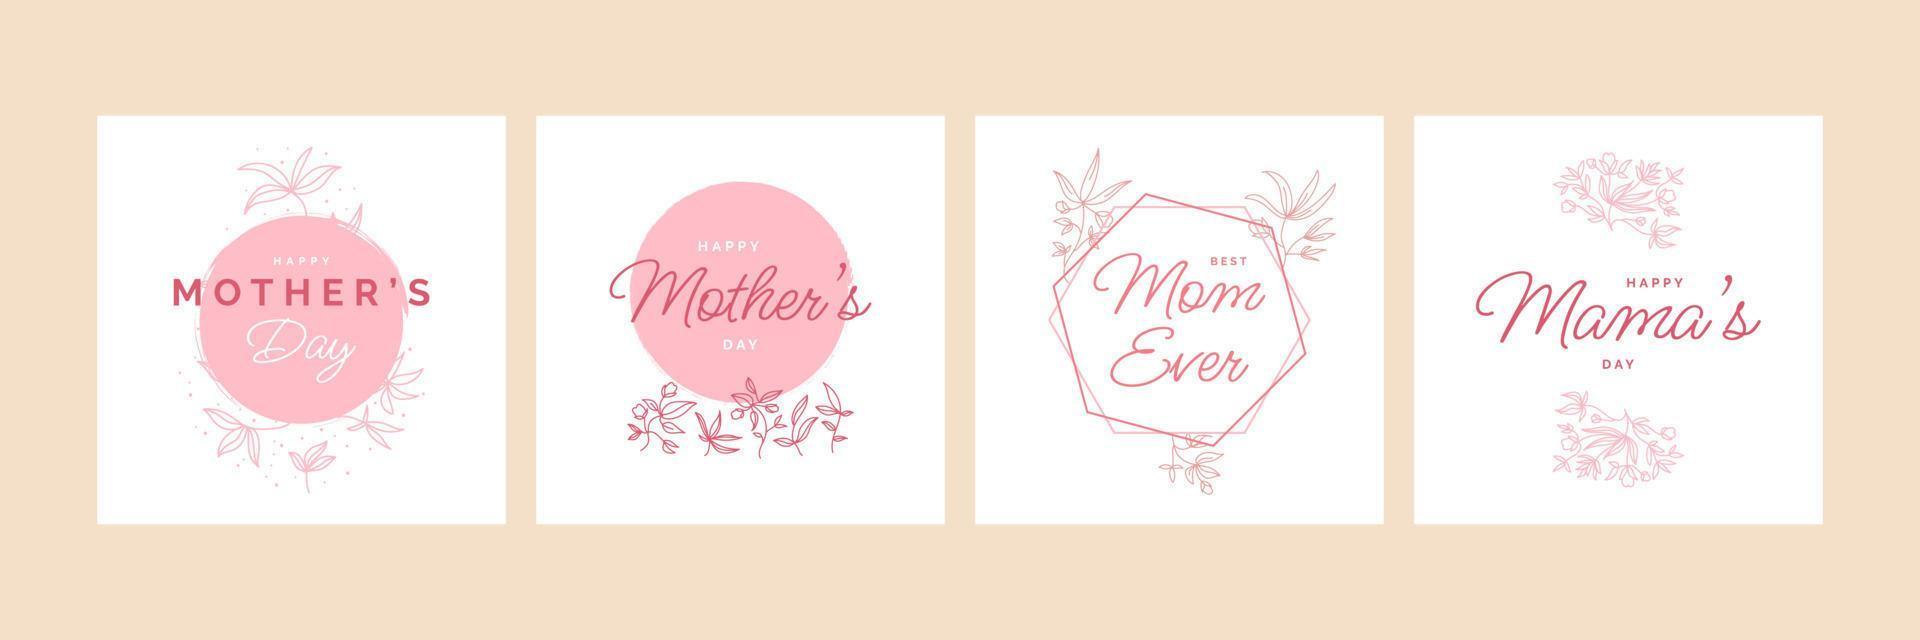 content de la mère journée typographie pour salutation carte ou affiche conception avec fleur illustration vecteur